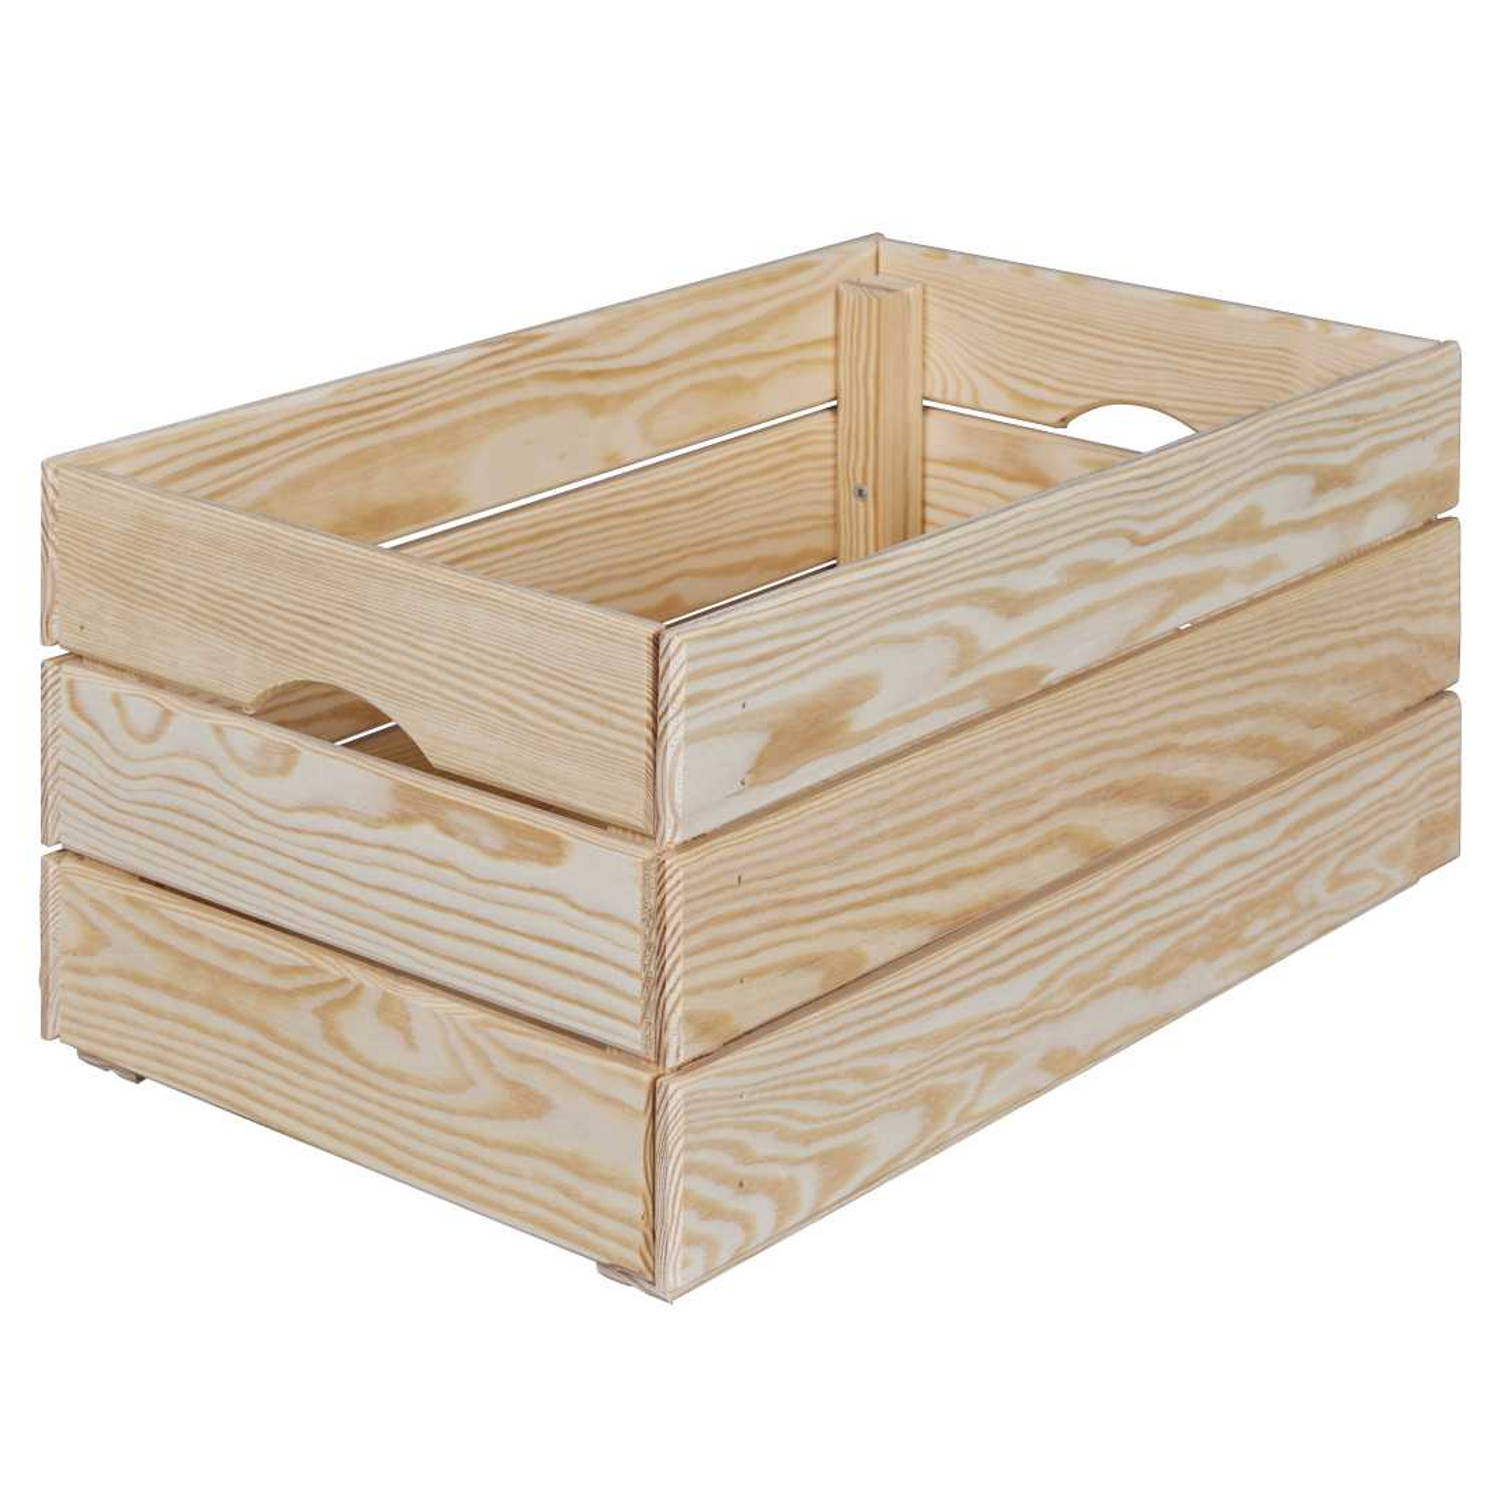 Valloni houten kist stapelbaar voor opslag 51x23x31cm naturel.